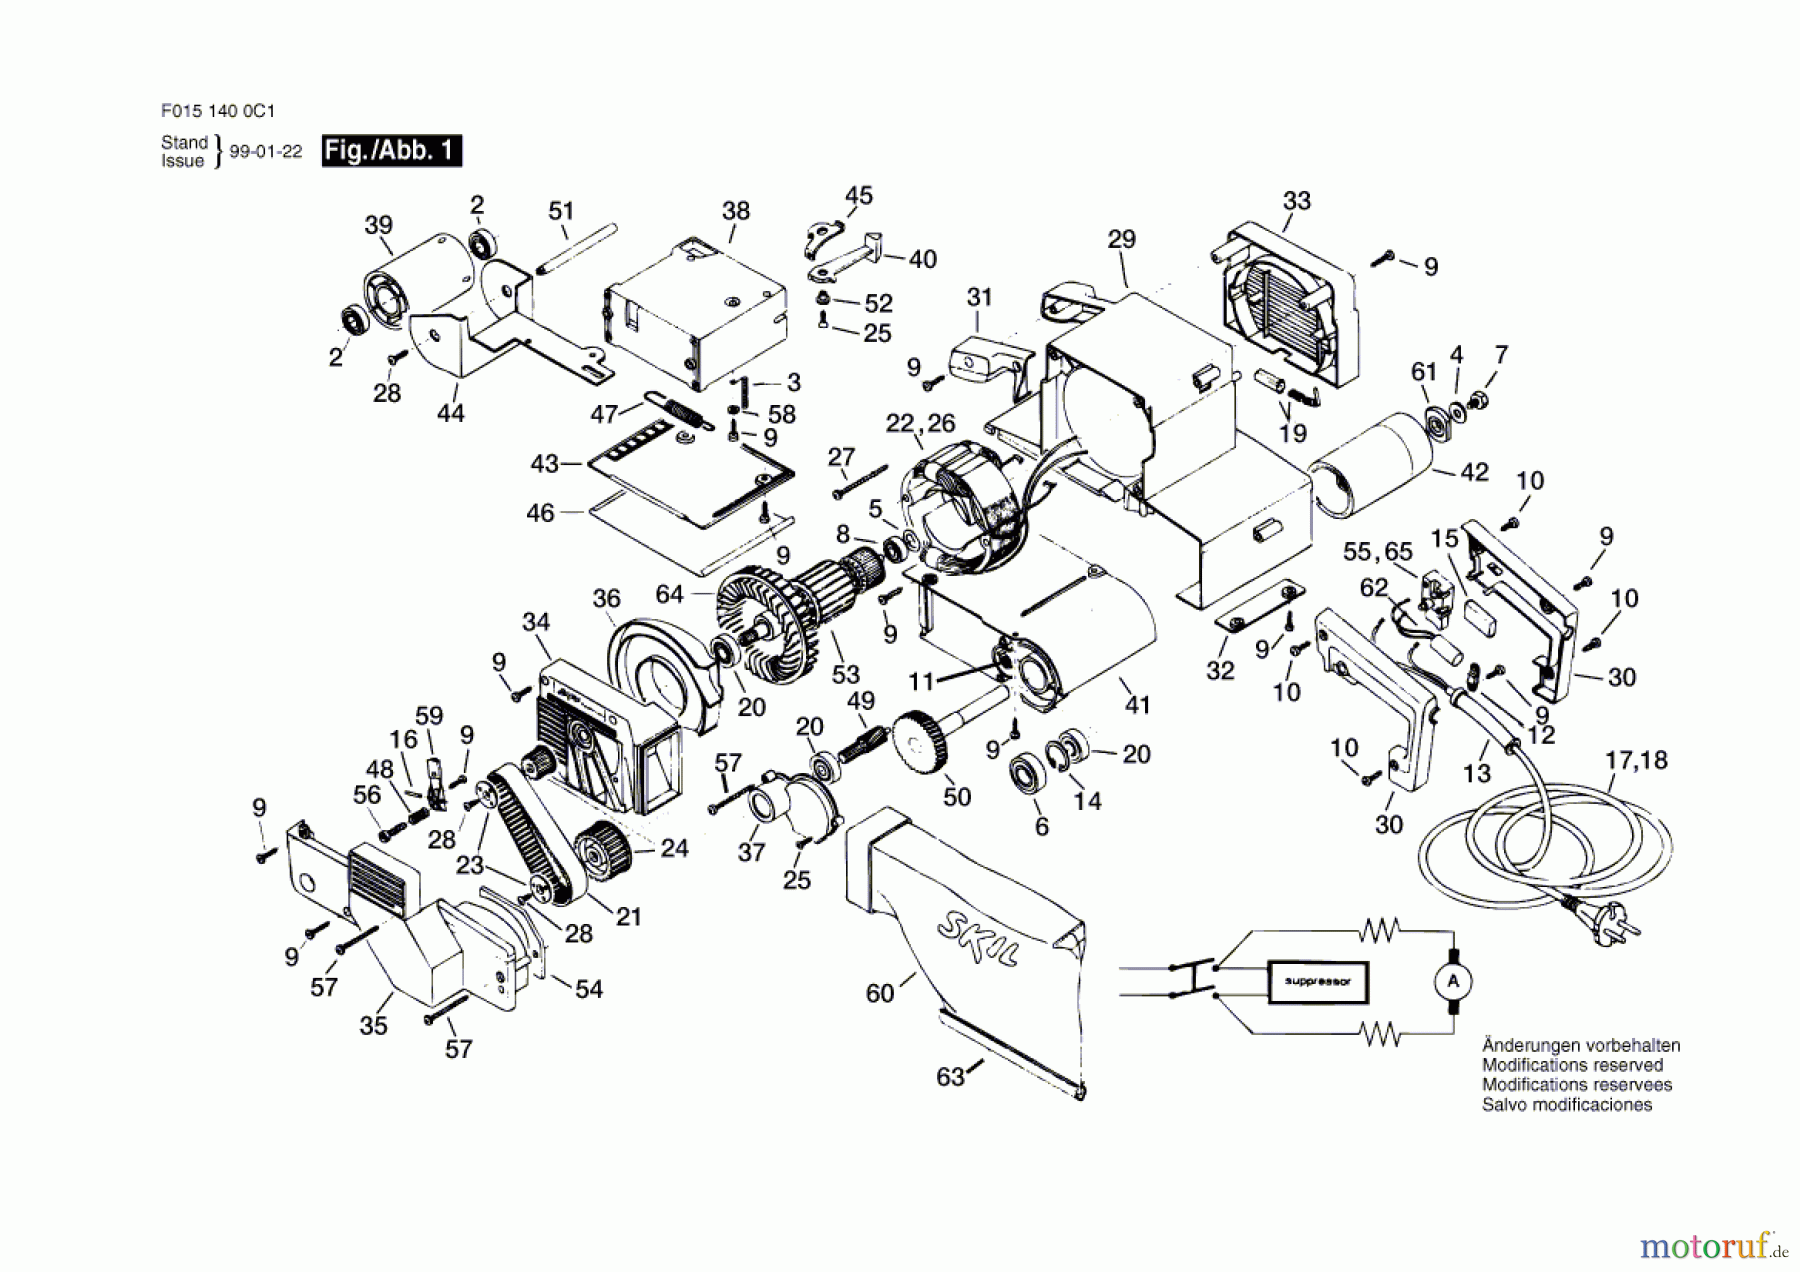  Bosch Werkzeug Bandschleifer 1400H1 Seite 1